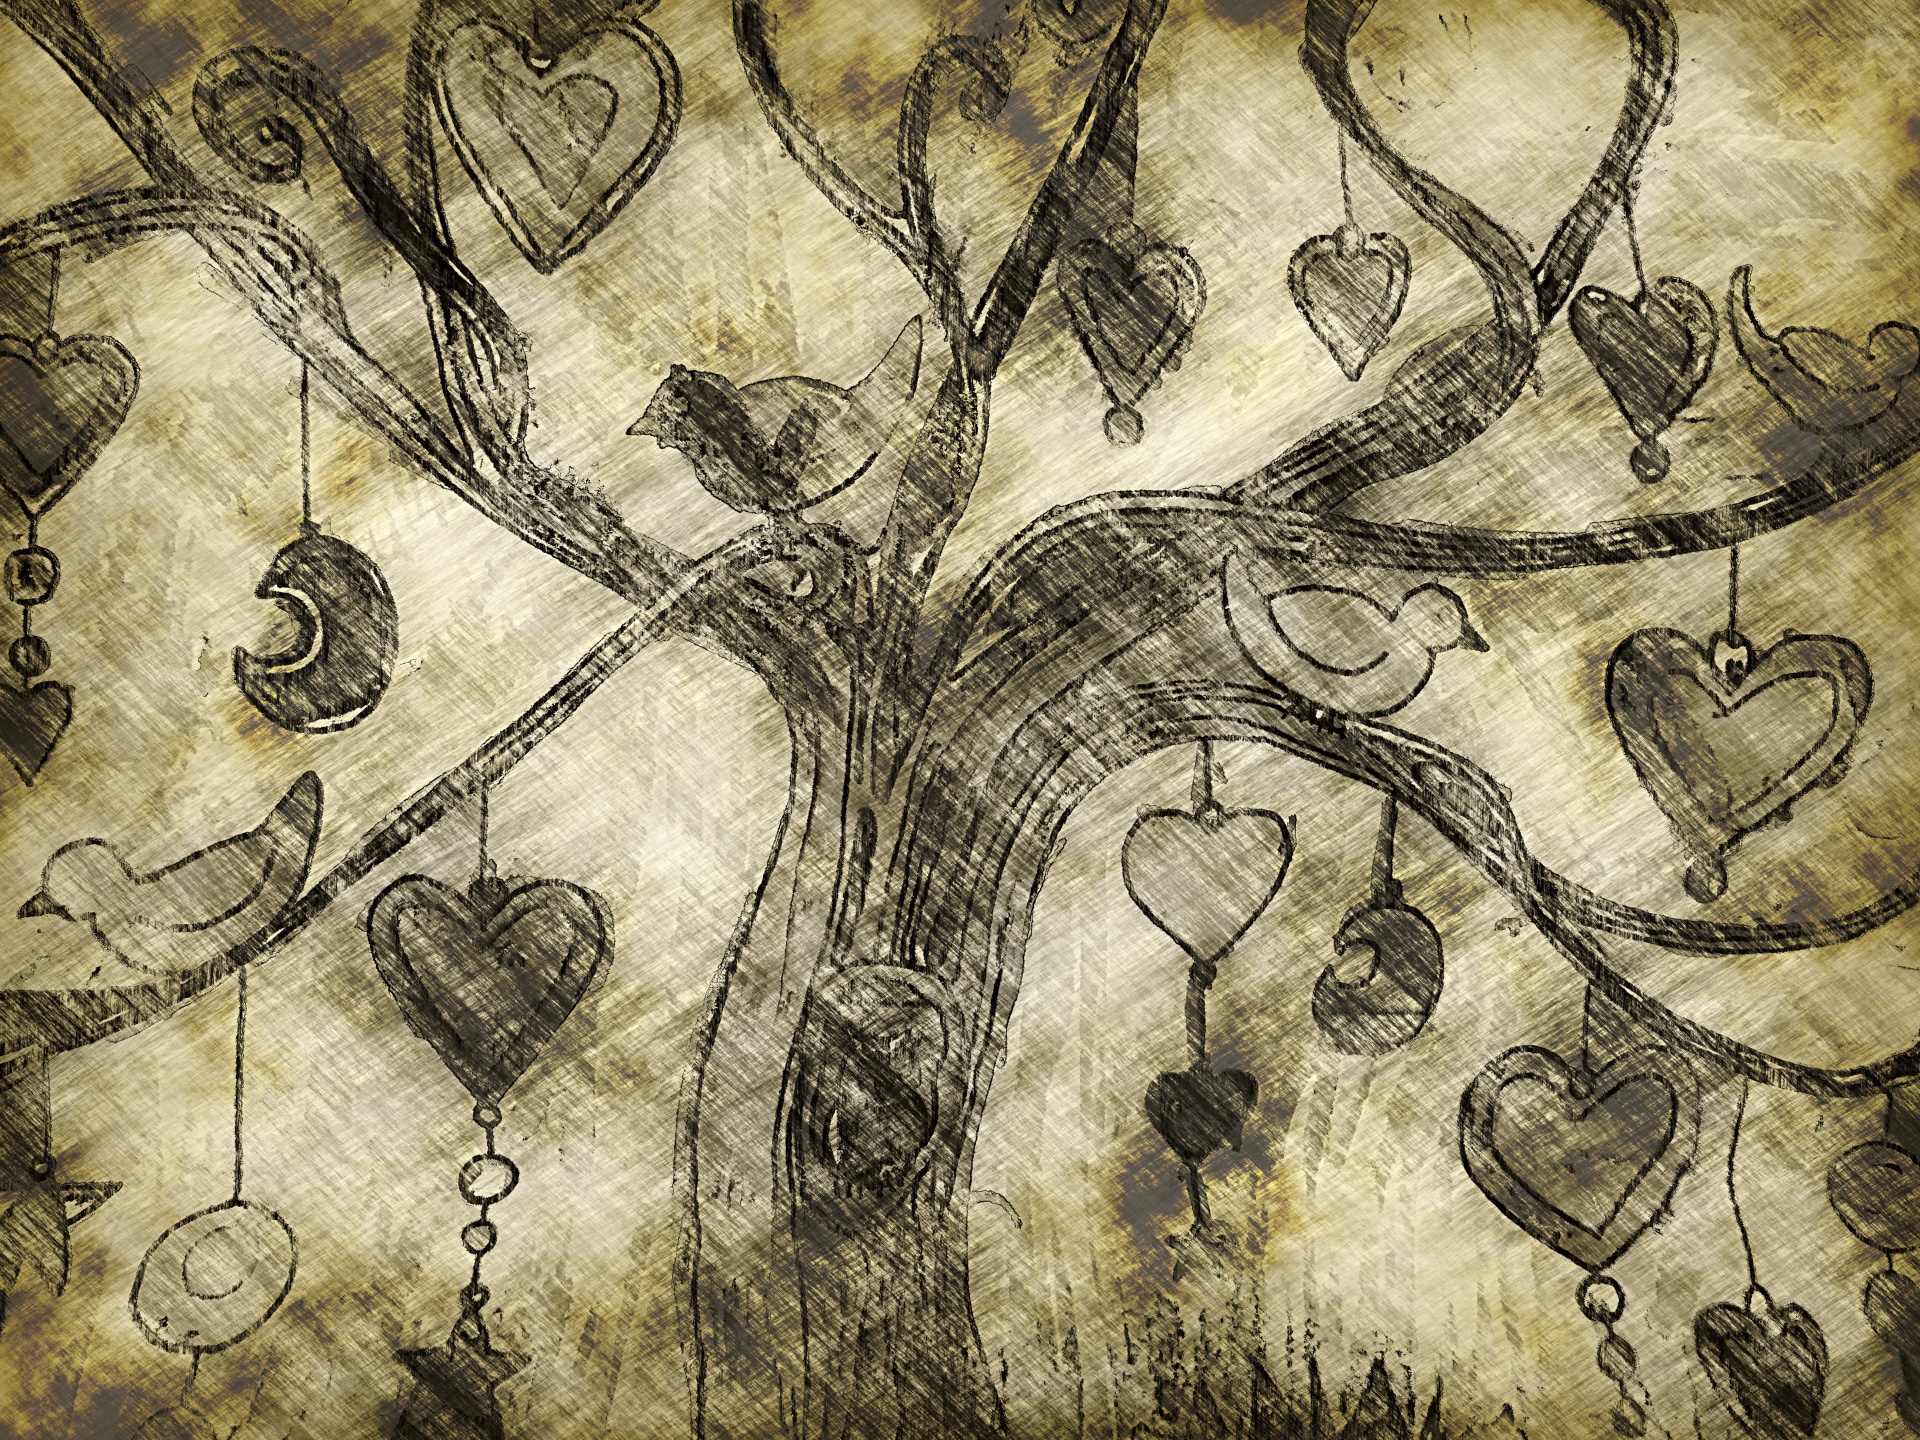 Tree, Birds And Hearts